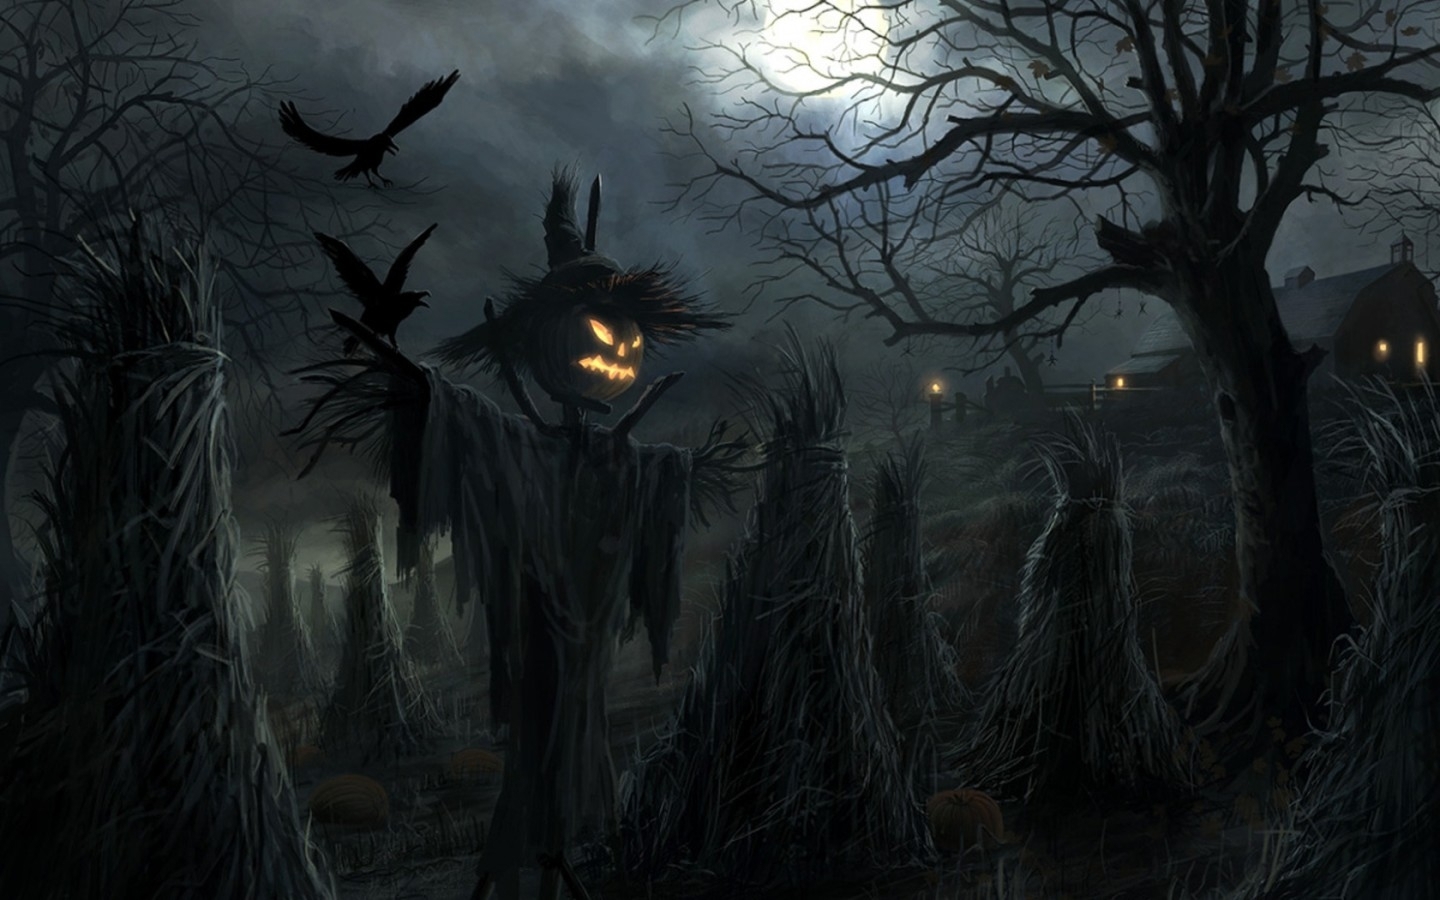 Популярные заставки и фоны Хэллоуин (Halloween) на компьютер